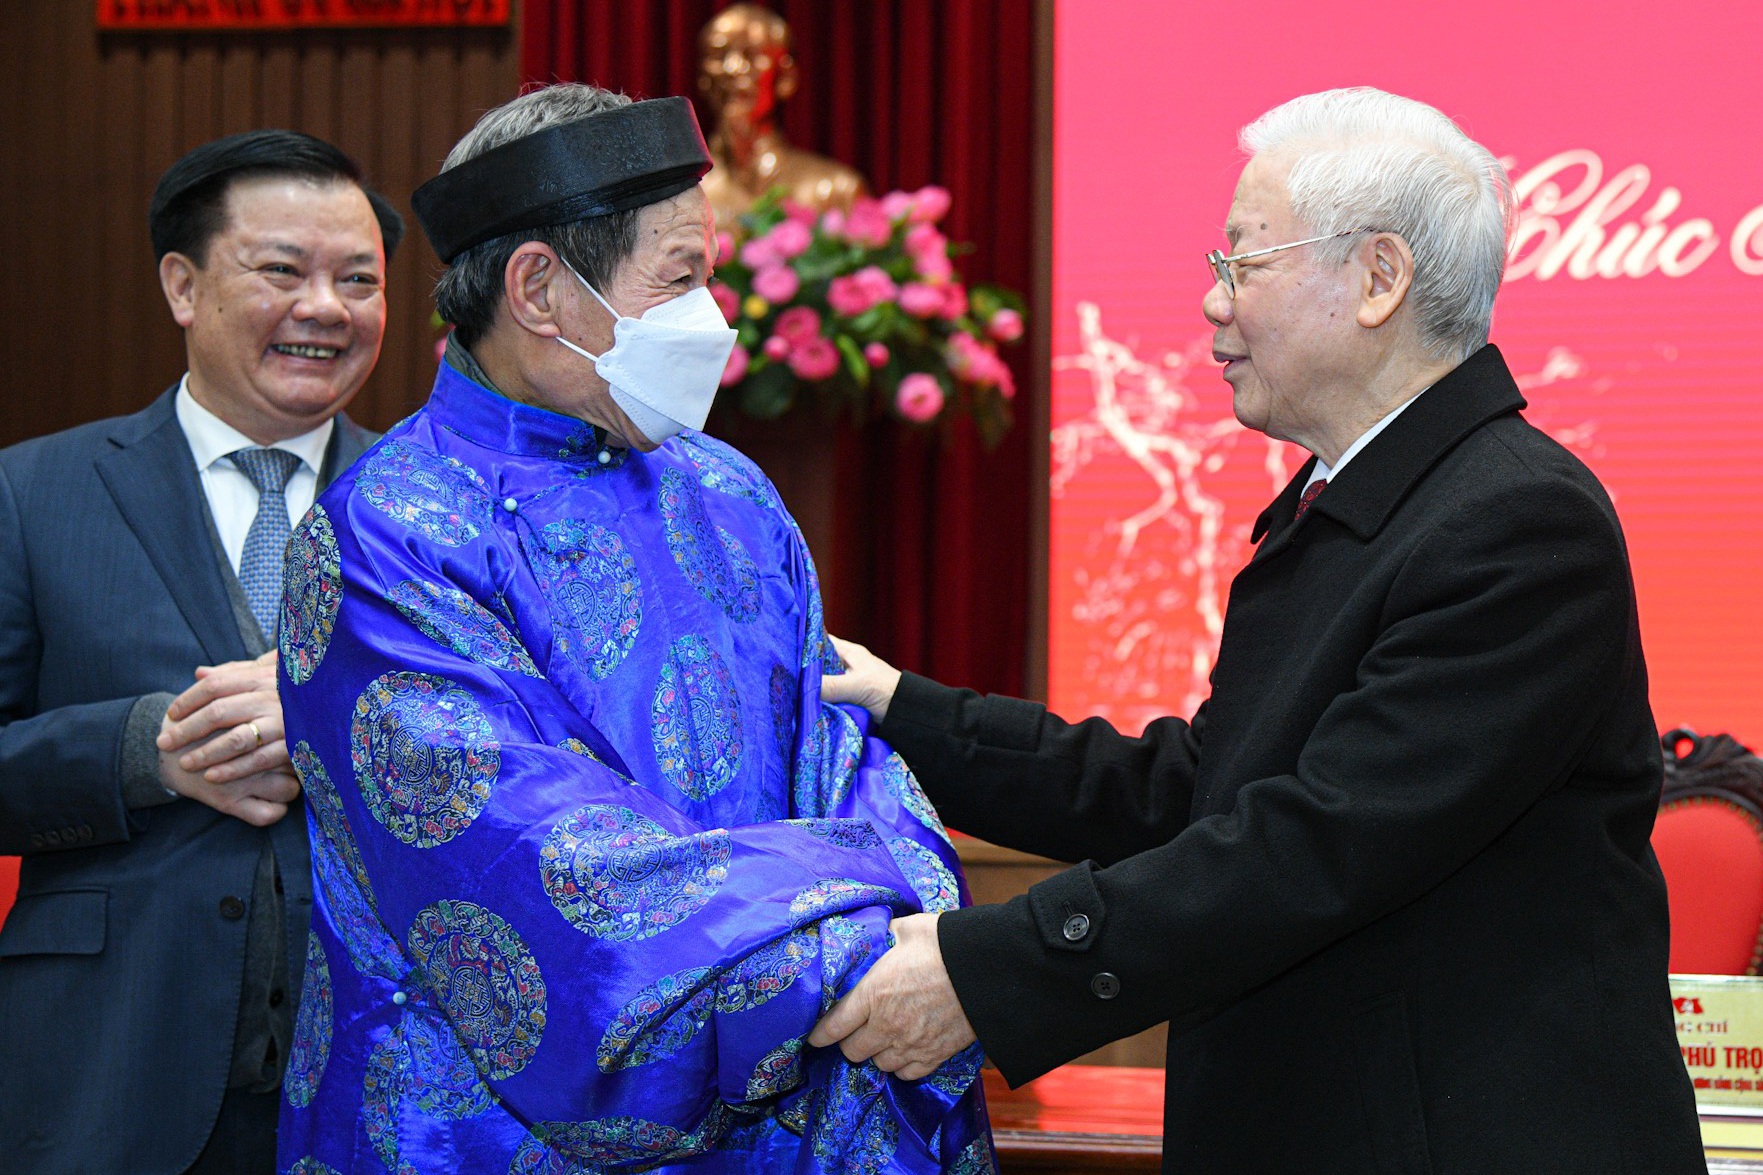 Tổng Bí thư Nguyễn Phú Trọng cũng đã ân cần thăm hỏi sức khỏe đại diện người cao tuổi tới dự trong buổi gặp mặt đêm giao thừa.